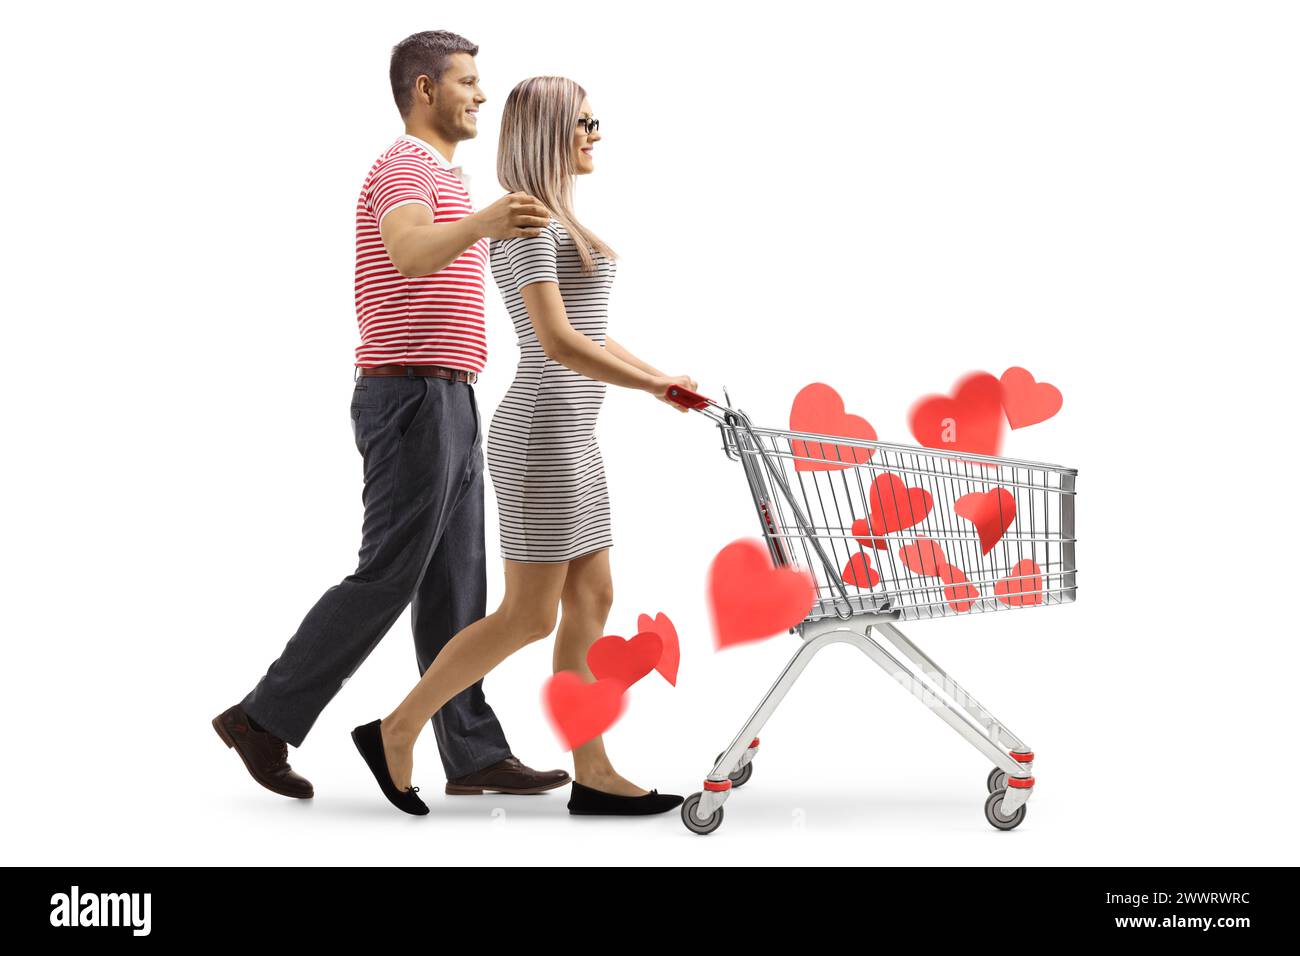 Plan de profil d'un jeune couple marchant et poussant un chariot avec des cœurs rouges à l'intérieur isolé sur fond blanc Banque D'Images